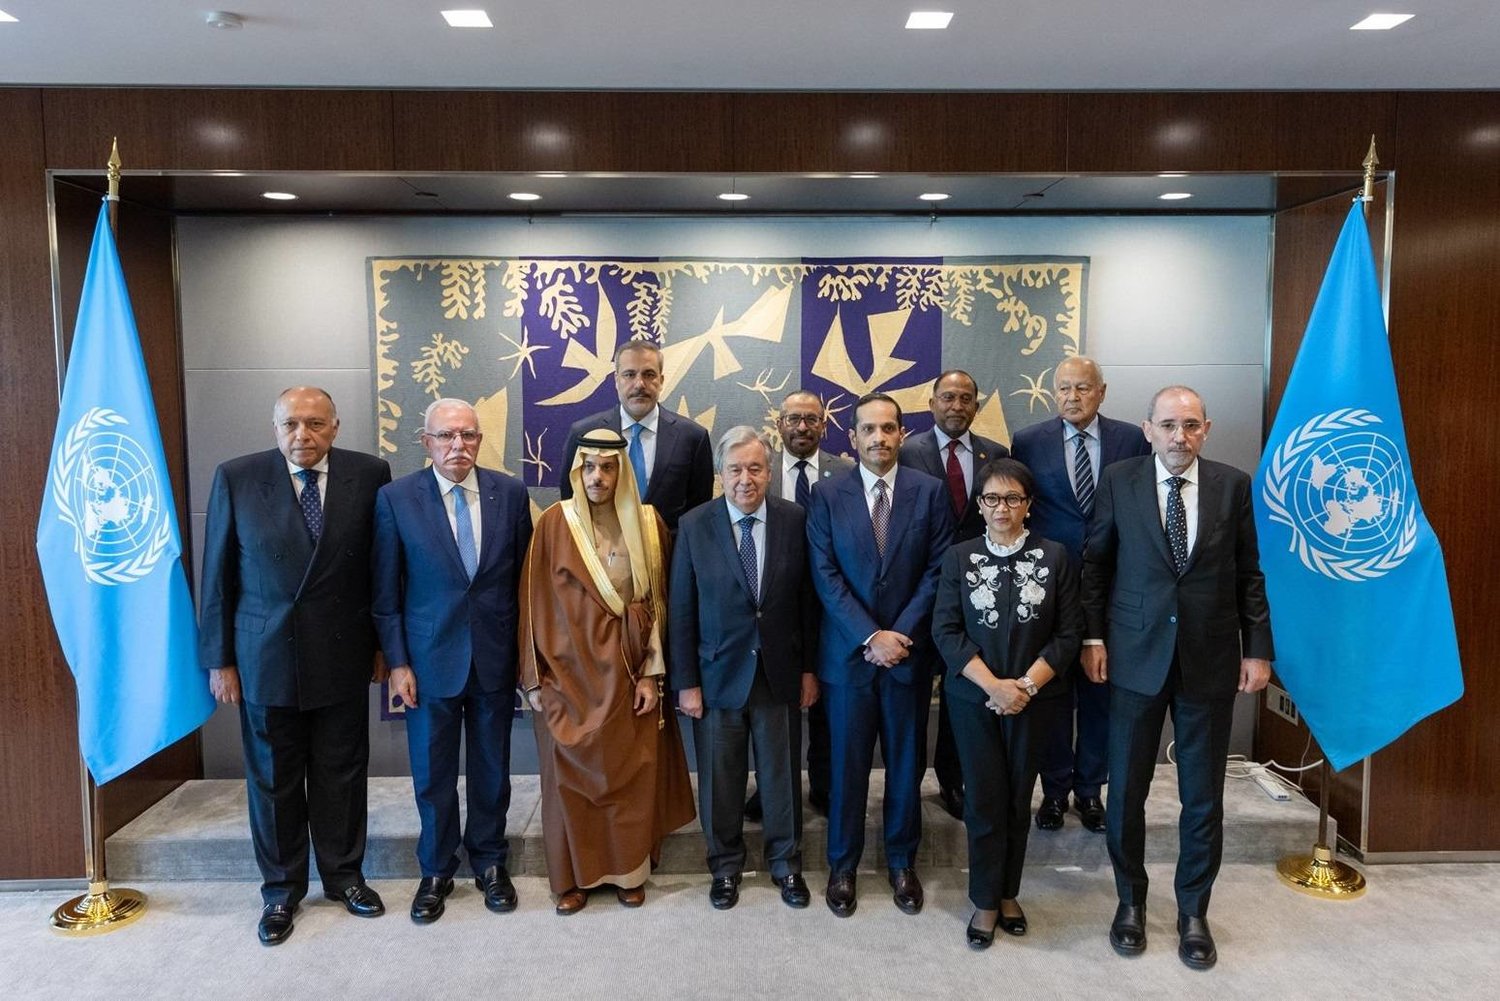 أعضاء "اللجنة الوزارية العربية الإسلامية المشتركة" مع أمين عام الأمم المتحدة قبيل اجتماعهم في نيويورك (واس)